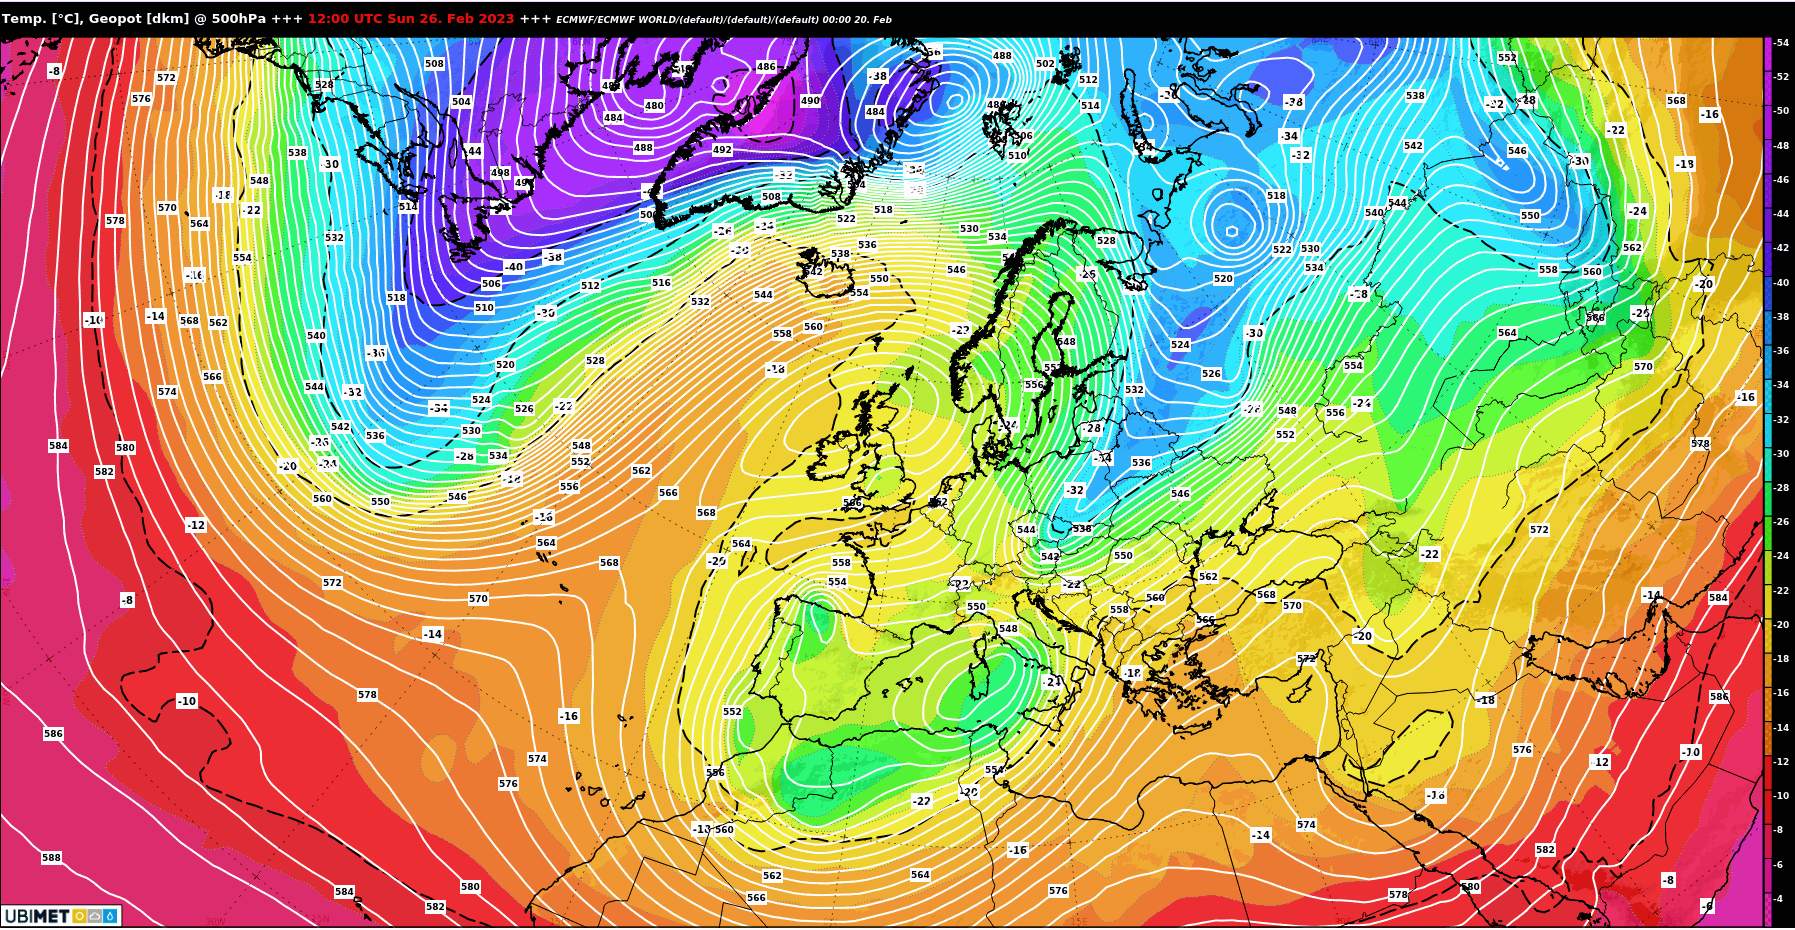 Abb. 4: Wetterlage nach dem europäischen Wettermodell ECMWF am kommenden Sonntag: Höhentrog über dem westlichen Mittelmeerraum mit Tief über Sardinien; Quelle: ECMWF